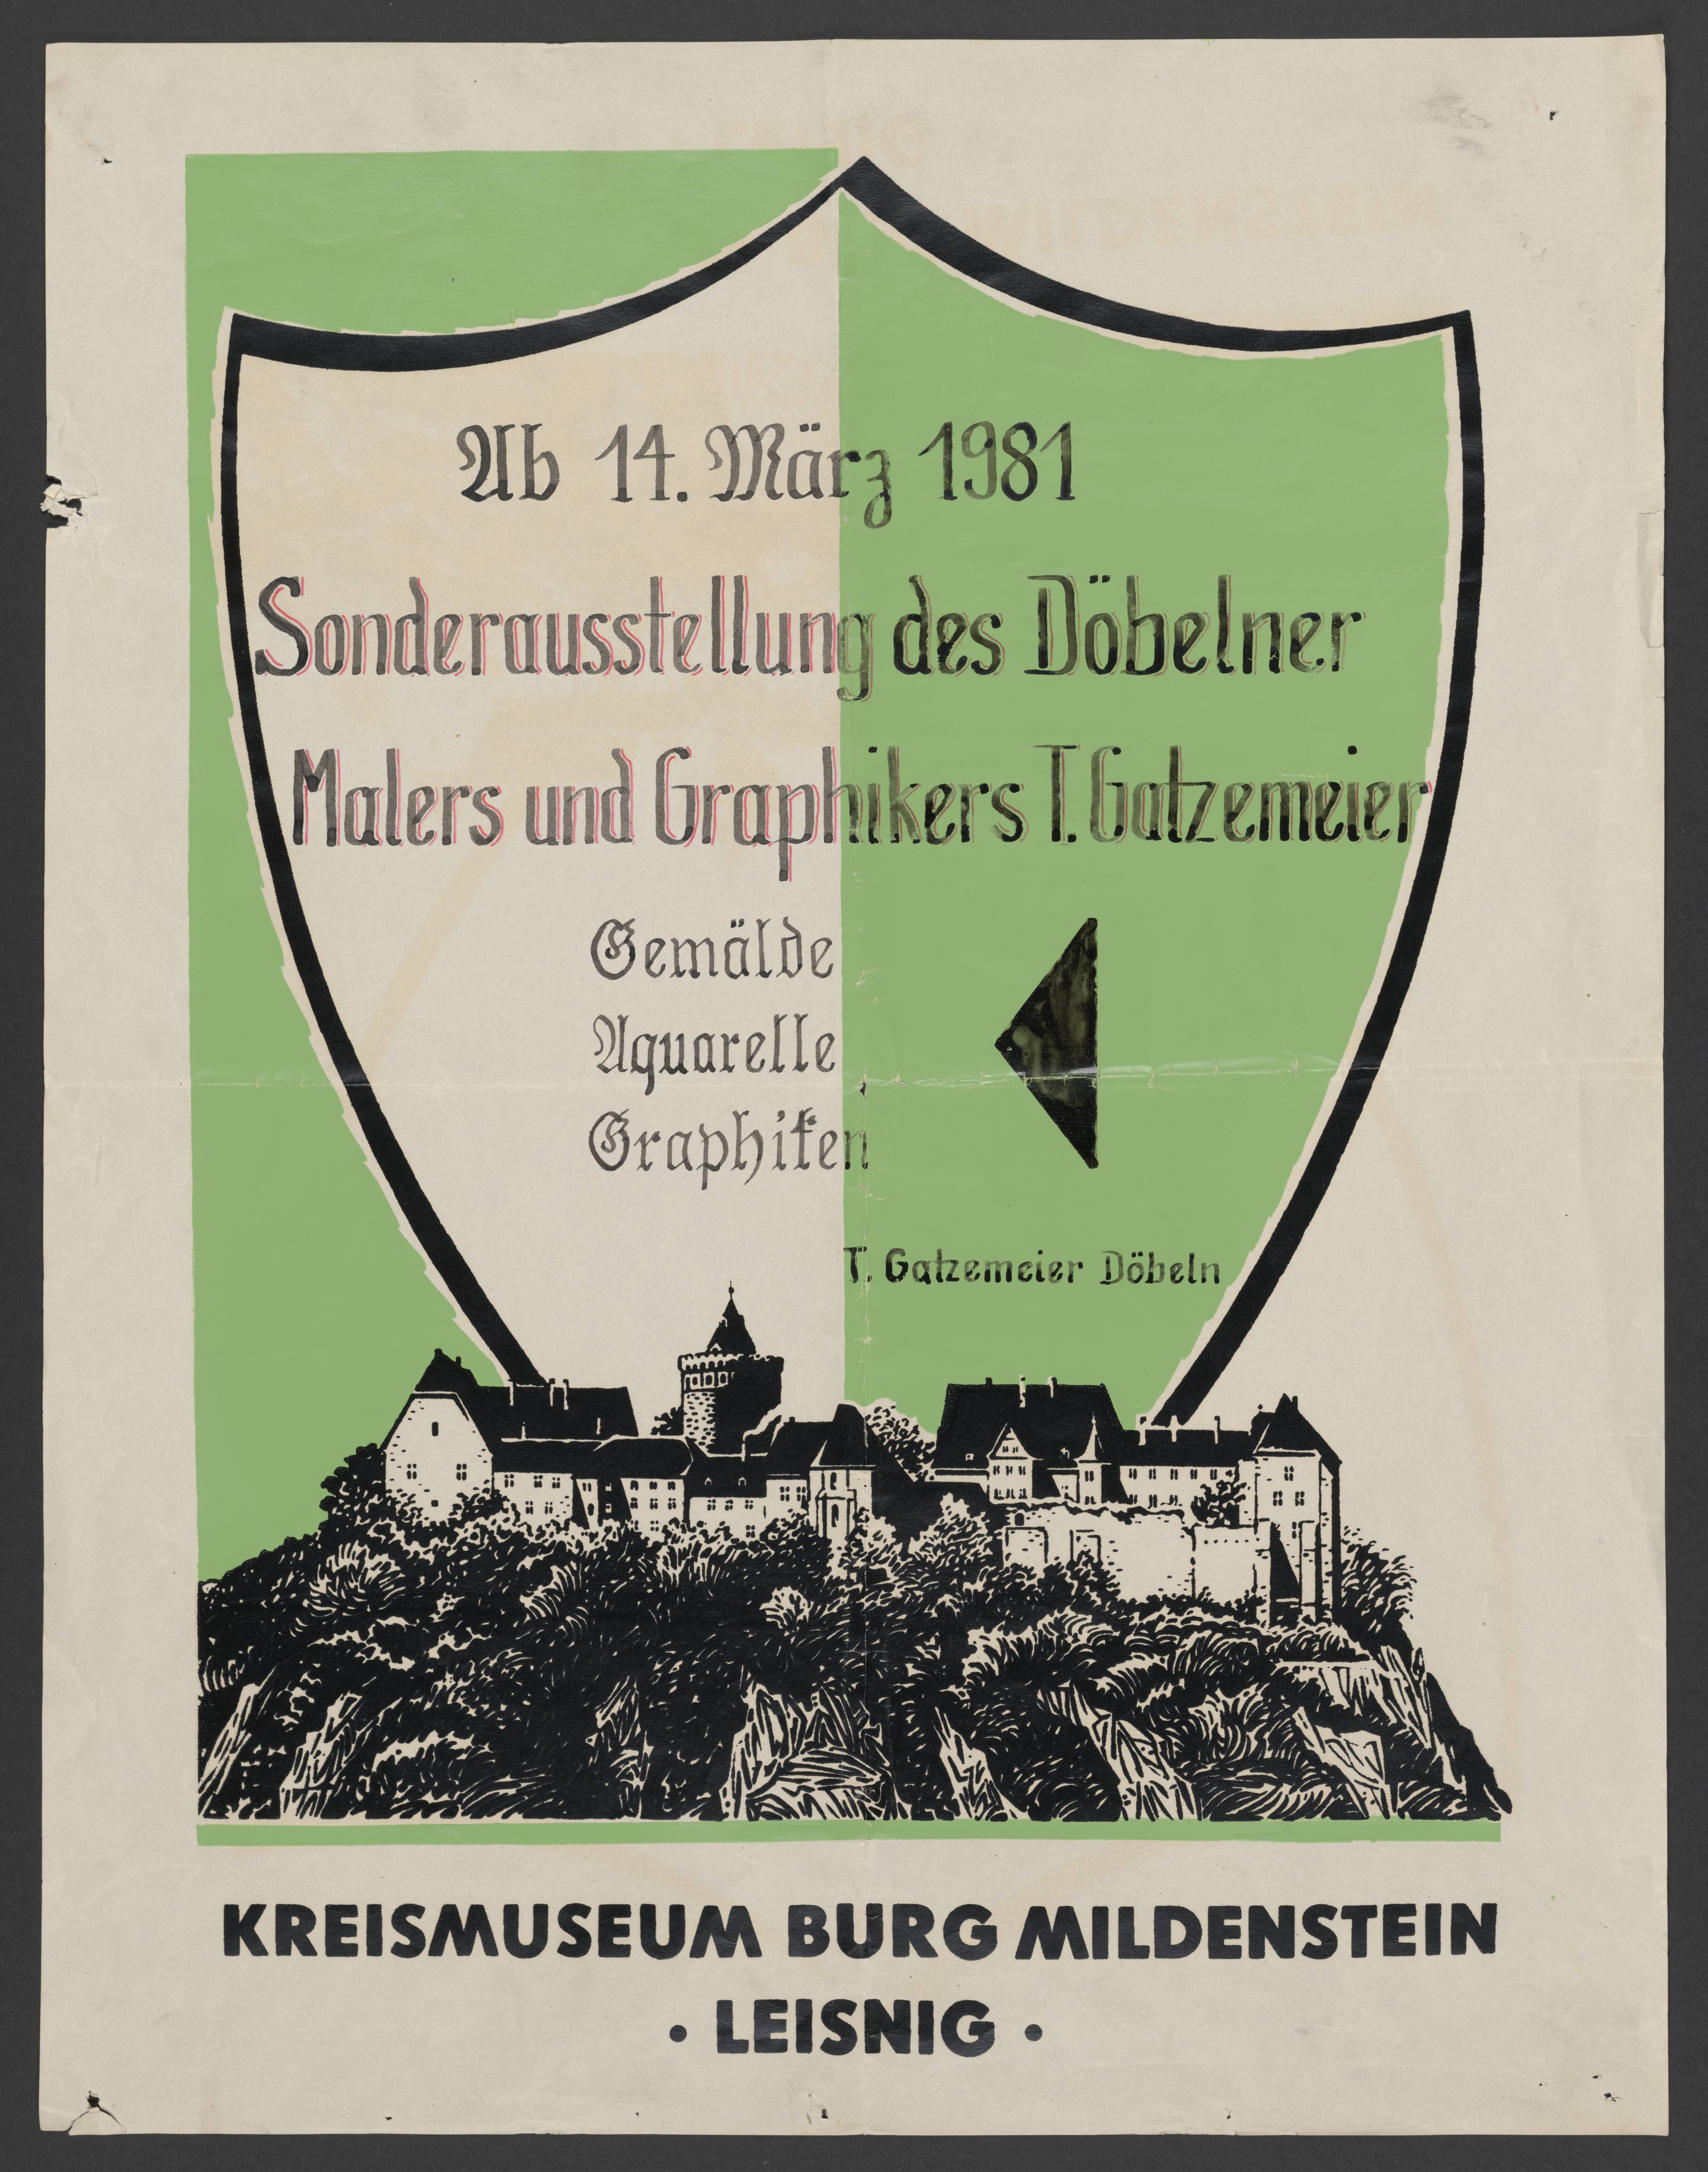 Plakat "Sonderausstellung des Döbelner Malers und Graphikers T. Gatzemeier" (Stadtmuseum / Kleine Galerie Döbeln CC BY-NC-SA)